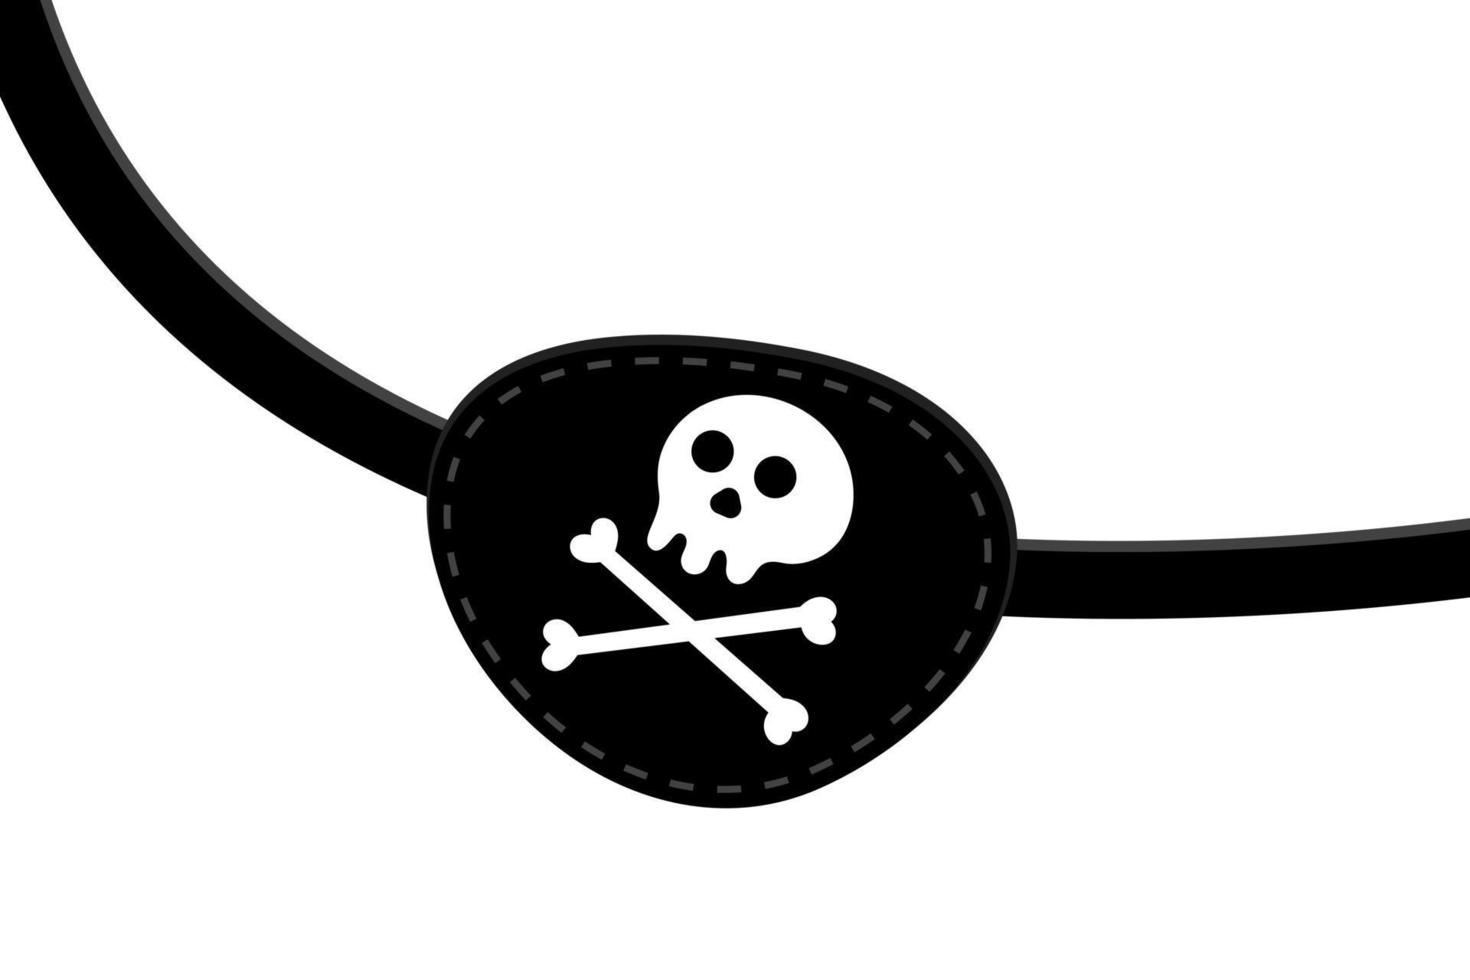 icono de parche en el ojo pirata signo ilustración de vector de diseño de estilo plano aislado sobre fondo blanco.